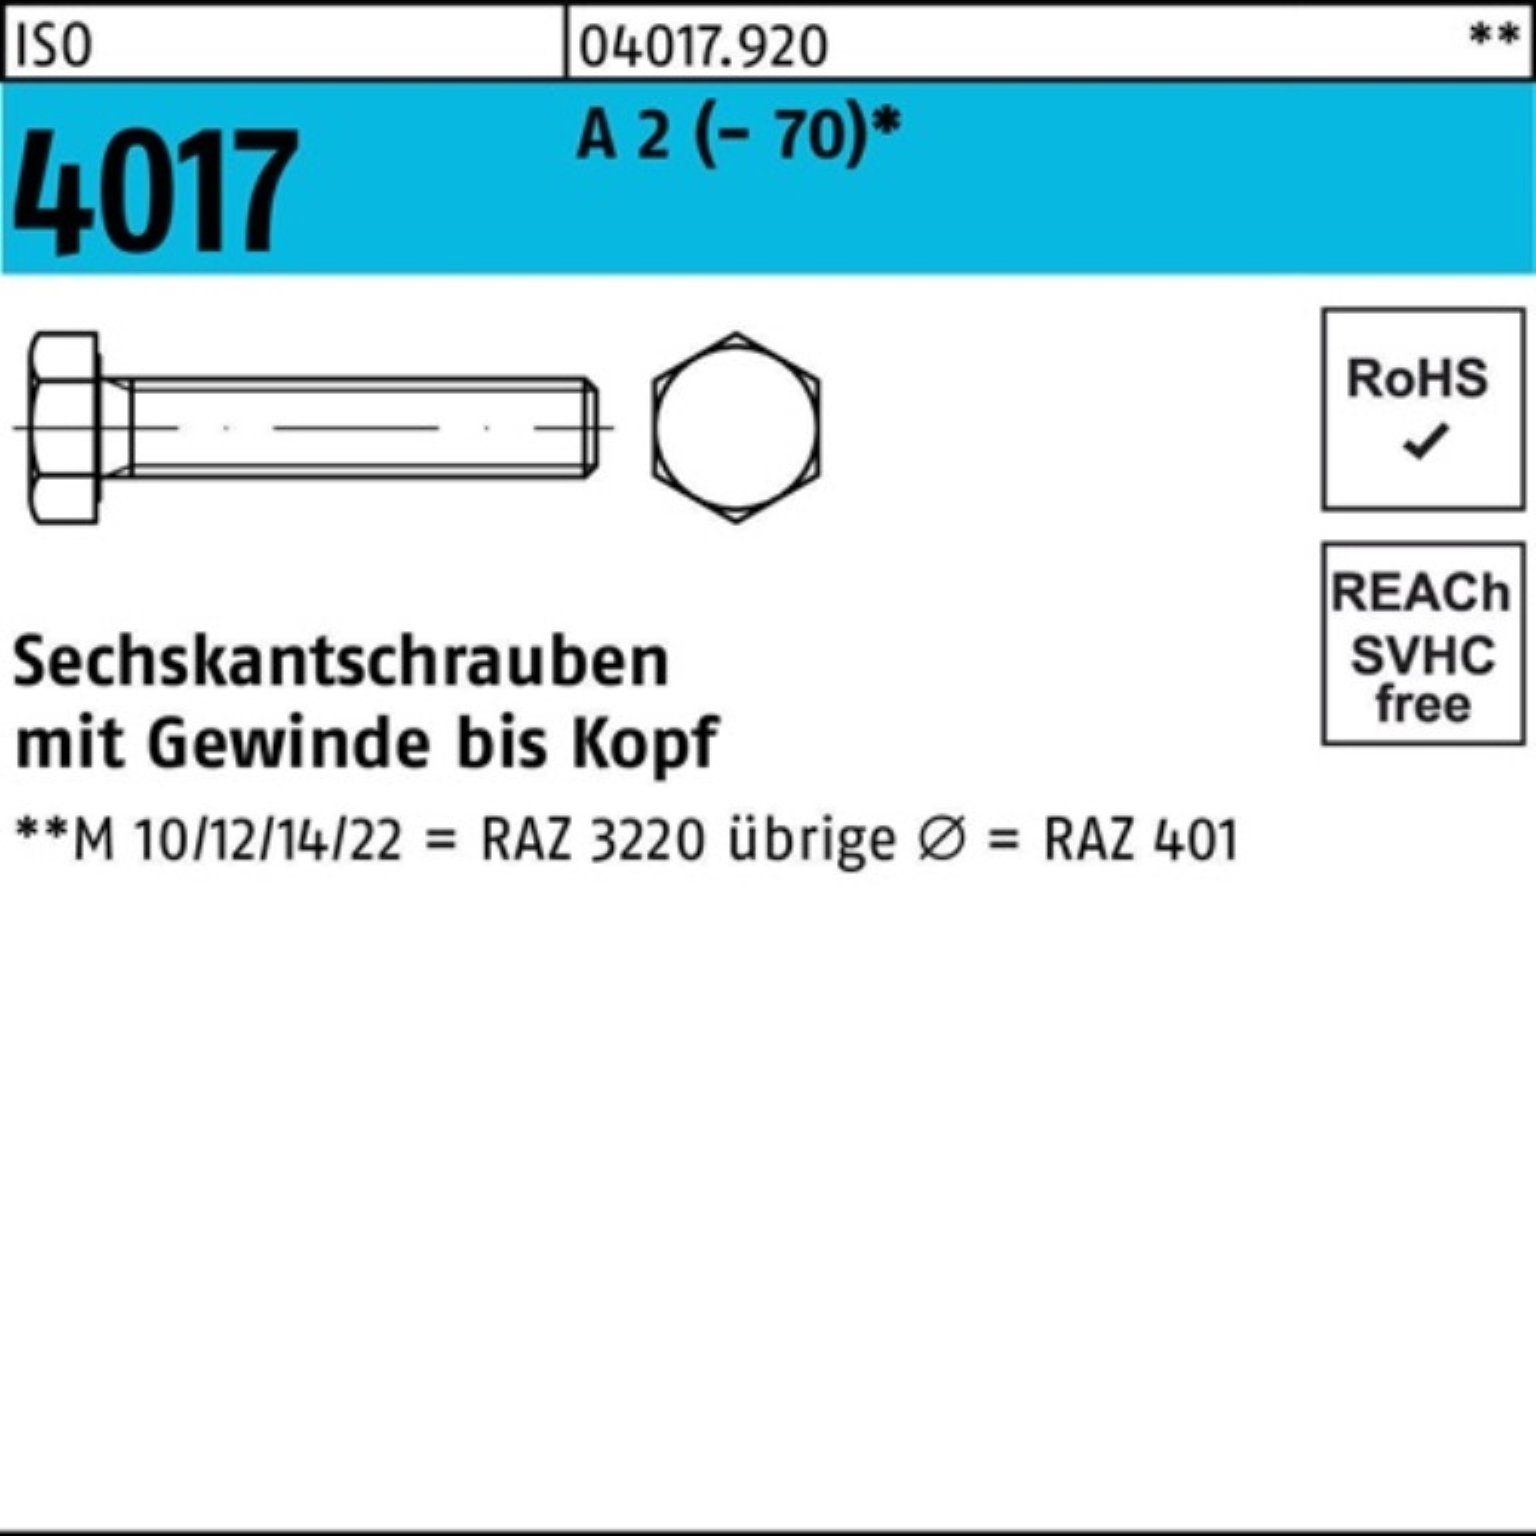 Bufab Sechskantschraube 14 Pack M4x Sechskantschraube Stück A 100er ISO 100 2 4017 VG (70)